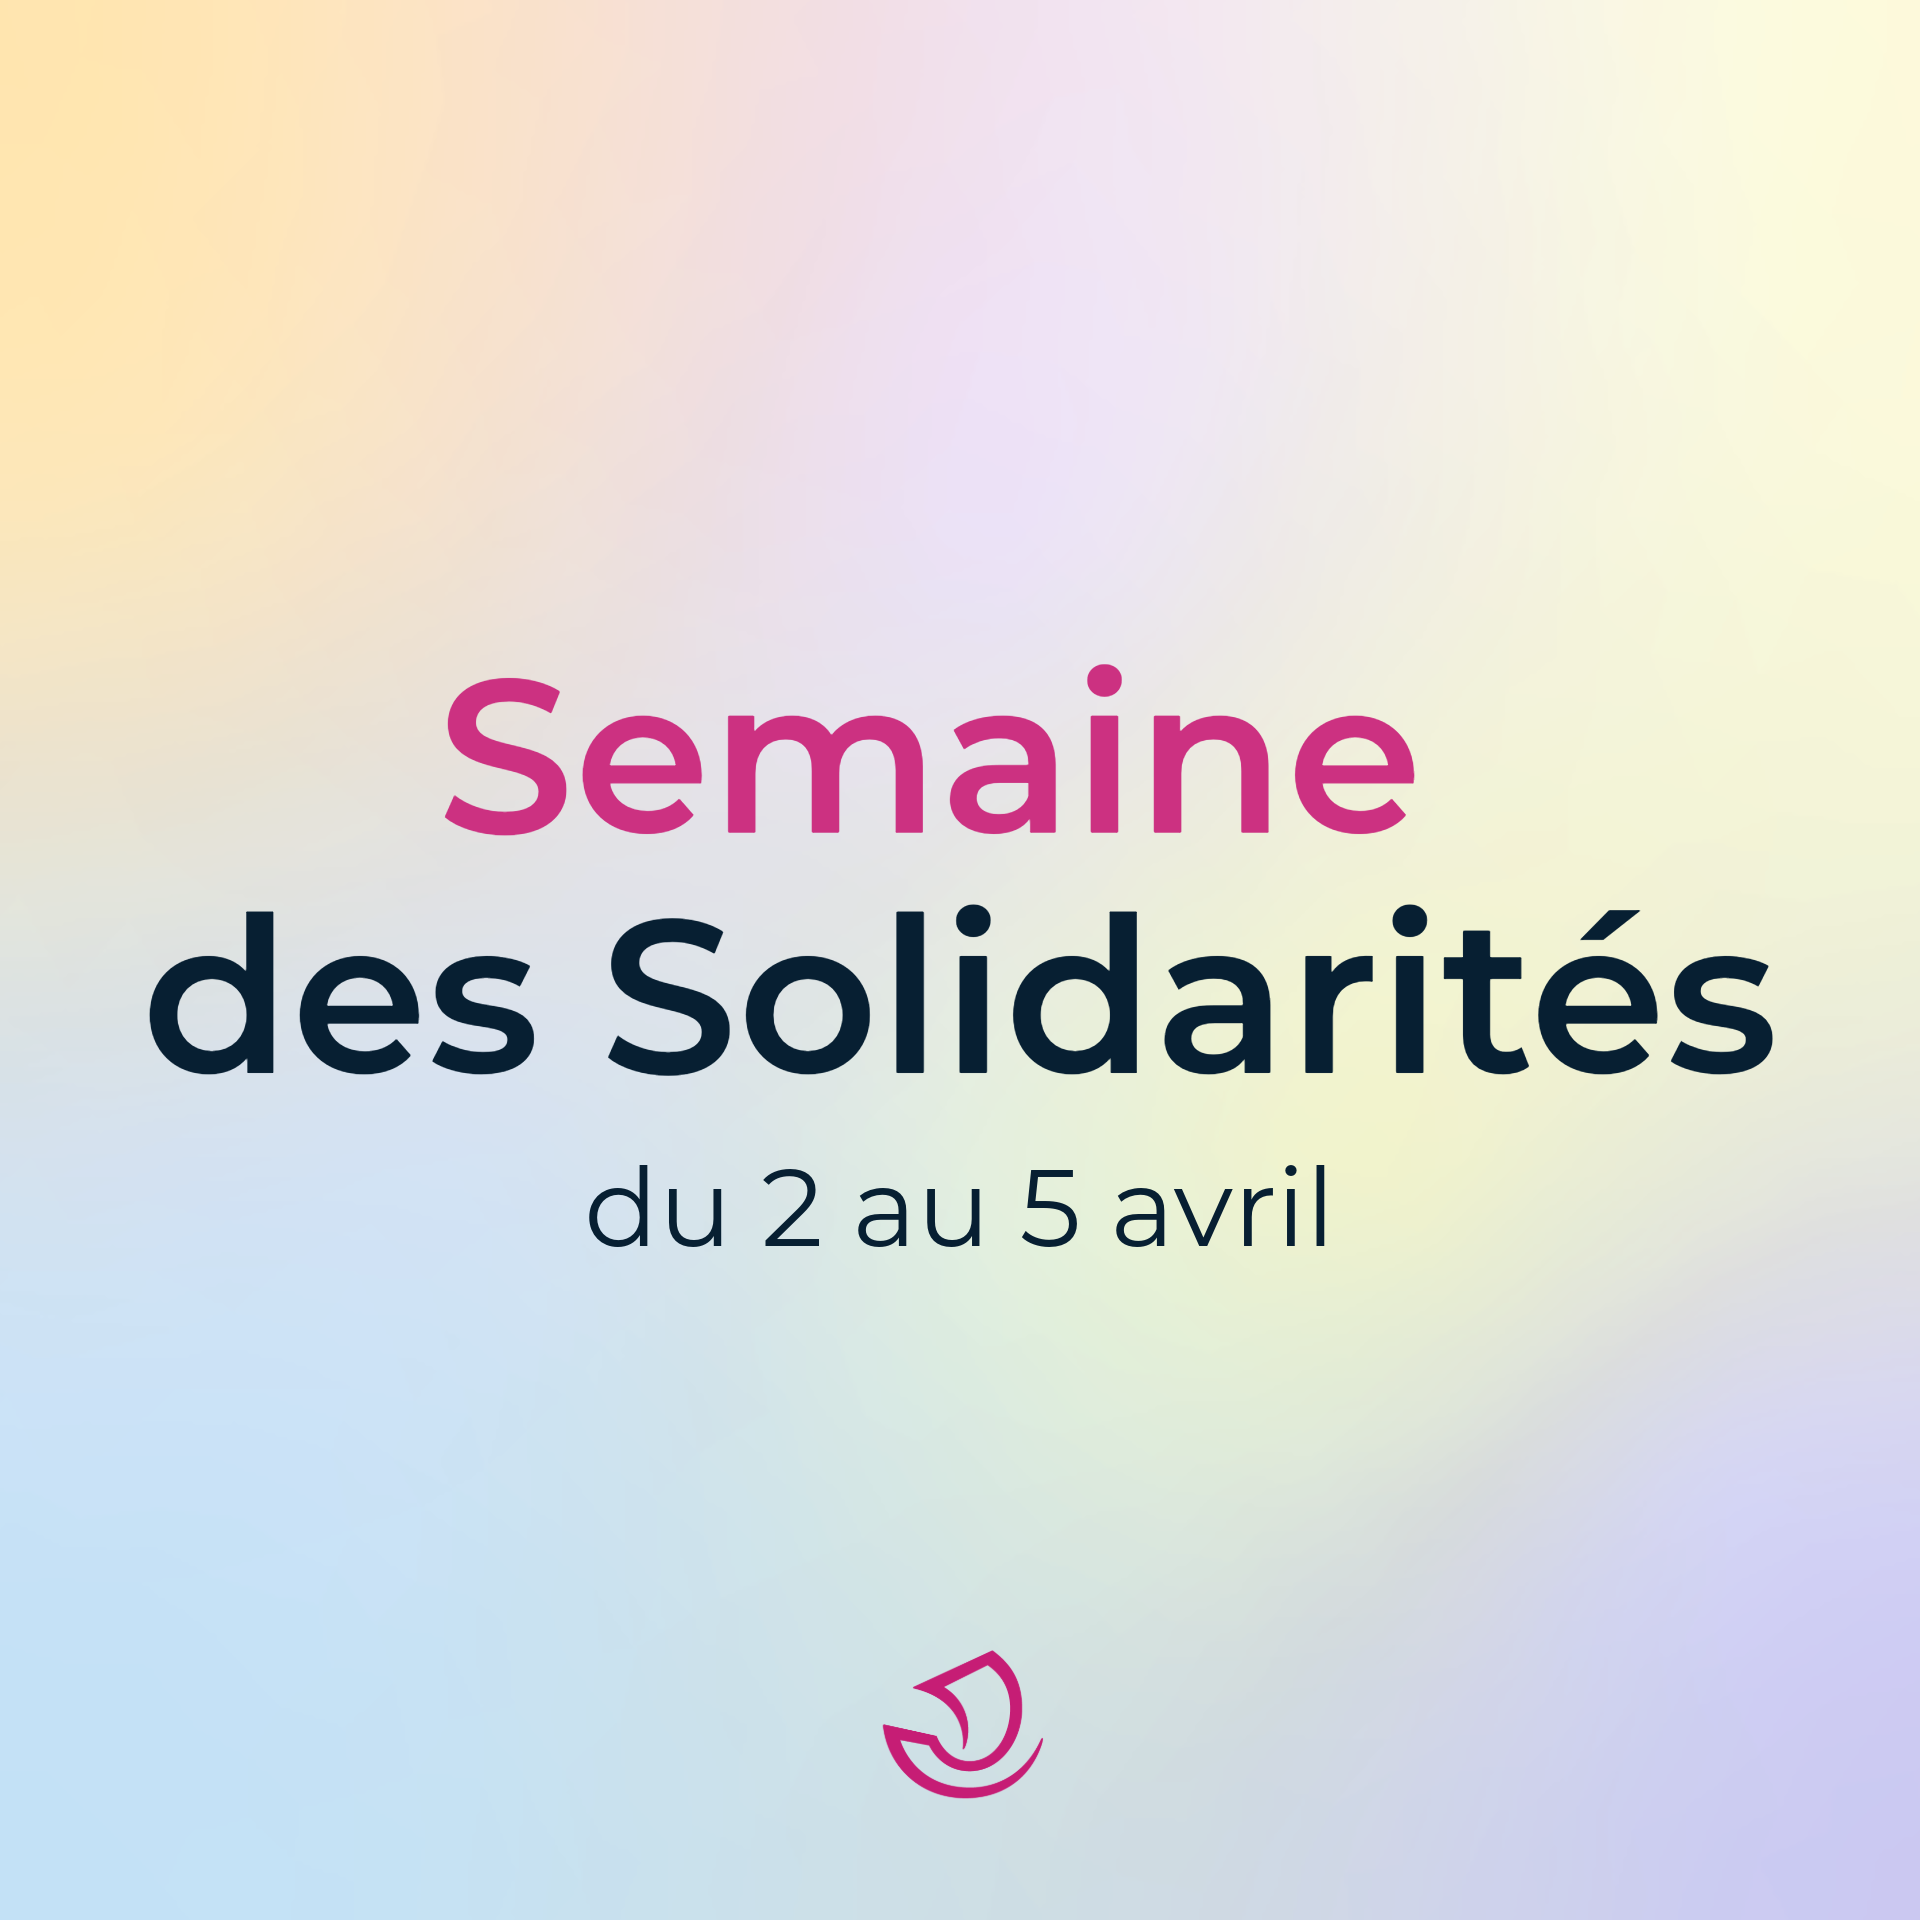 Semaine des solidarités de la Ville de Paris du 2 au 5 avril